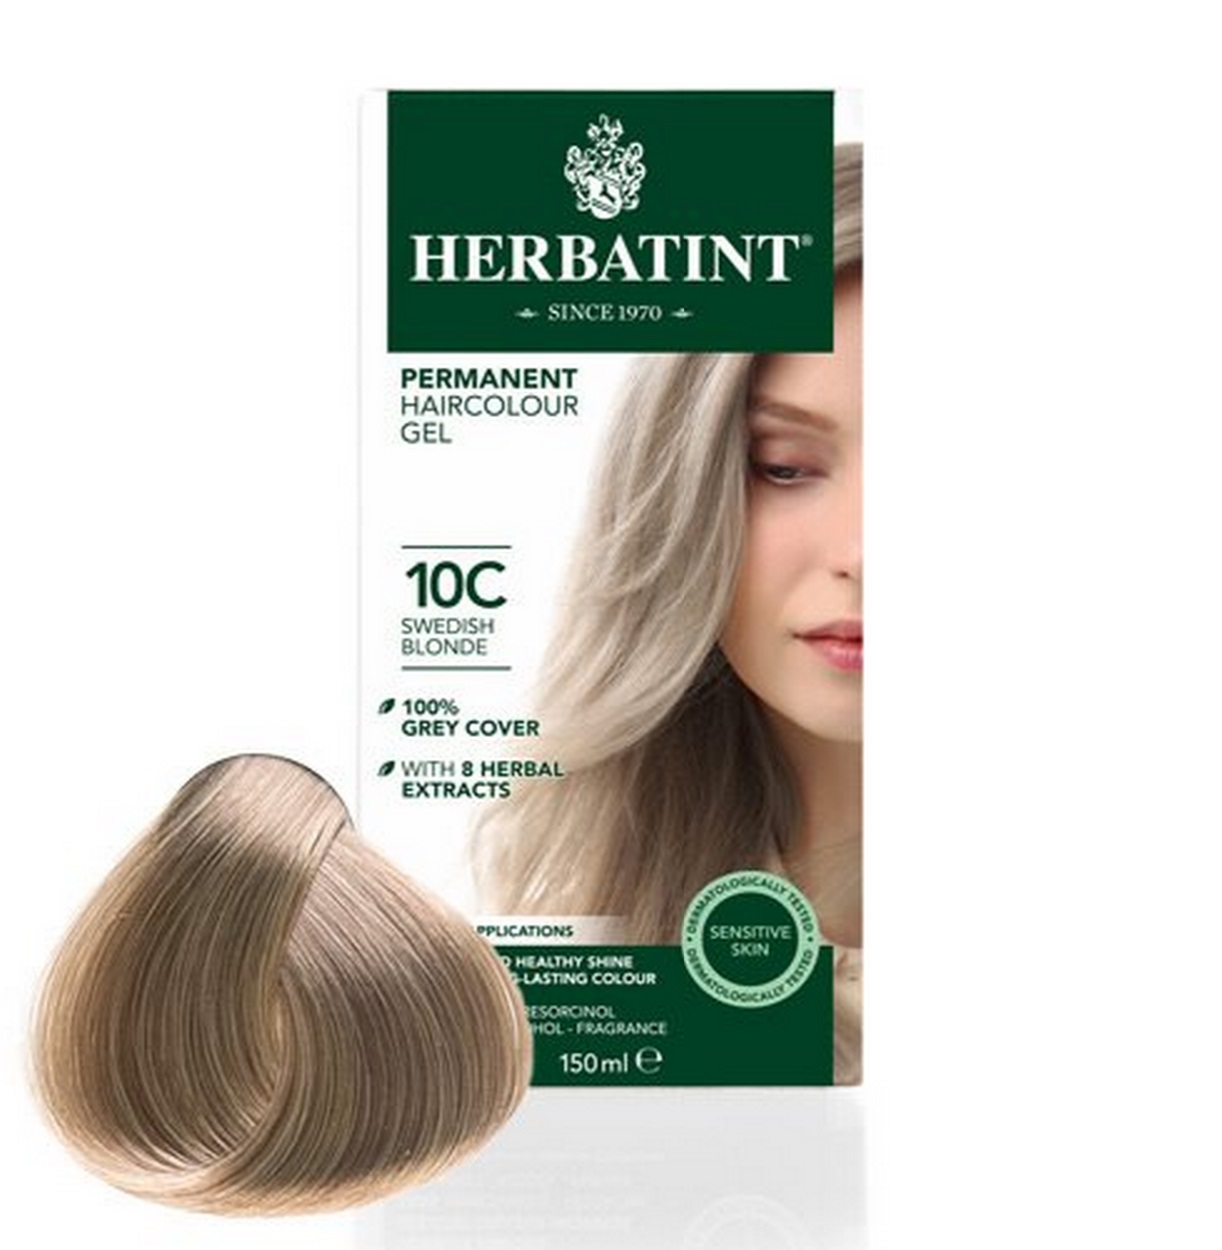 Billede af Herbatint 10C hårfarve Swedish Blonde, 150ml. hos Ren-velvaereshop.dk